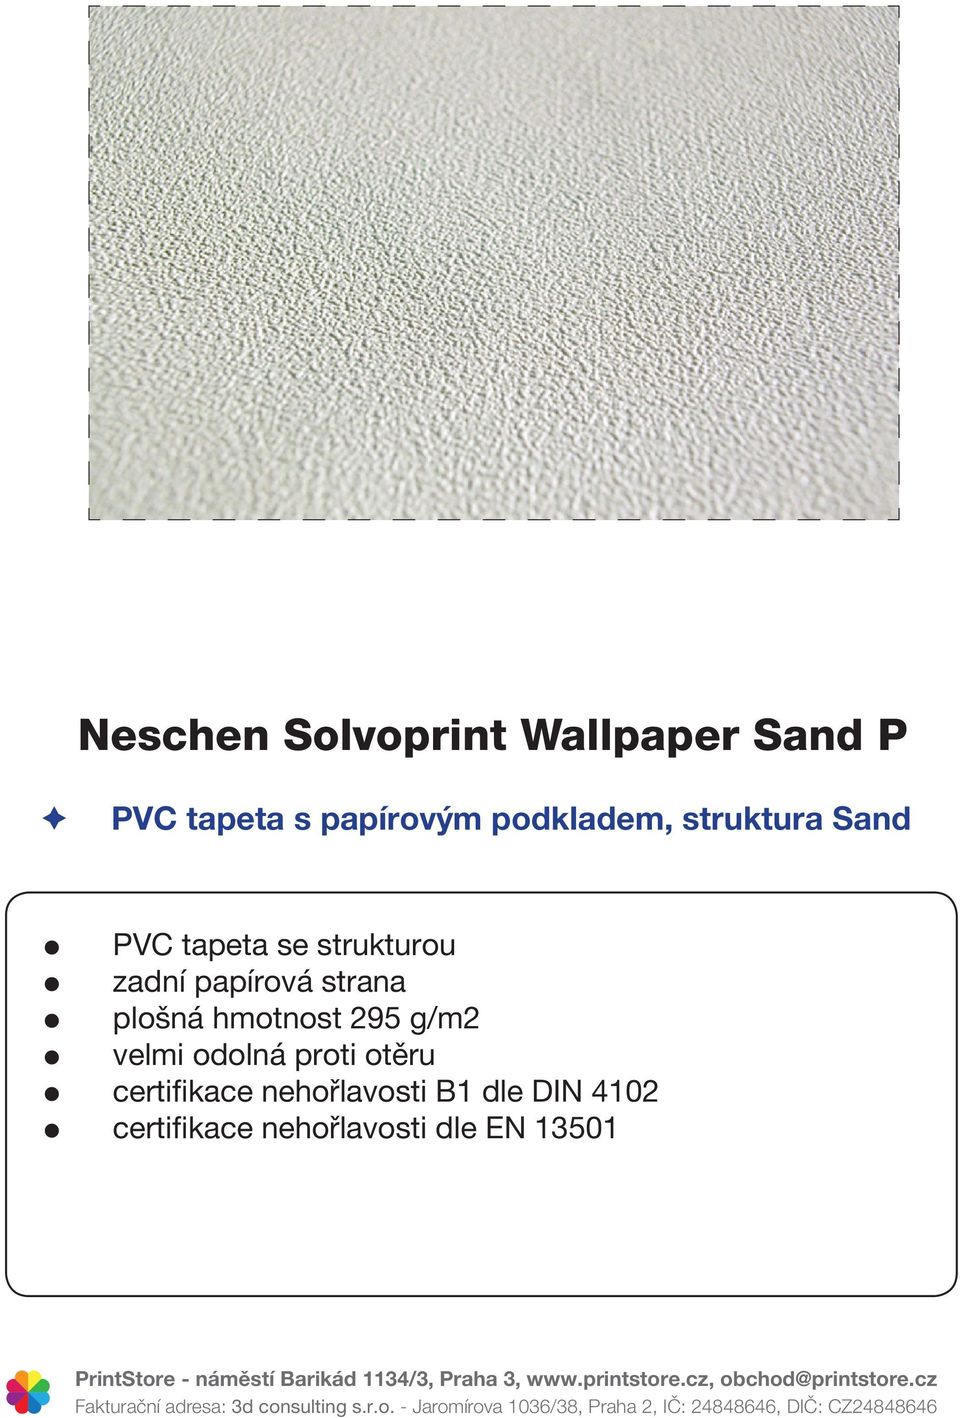 papírová strana plošná hmotnost 295 g/m2 certifikace